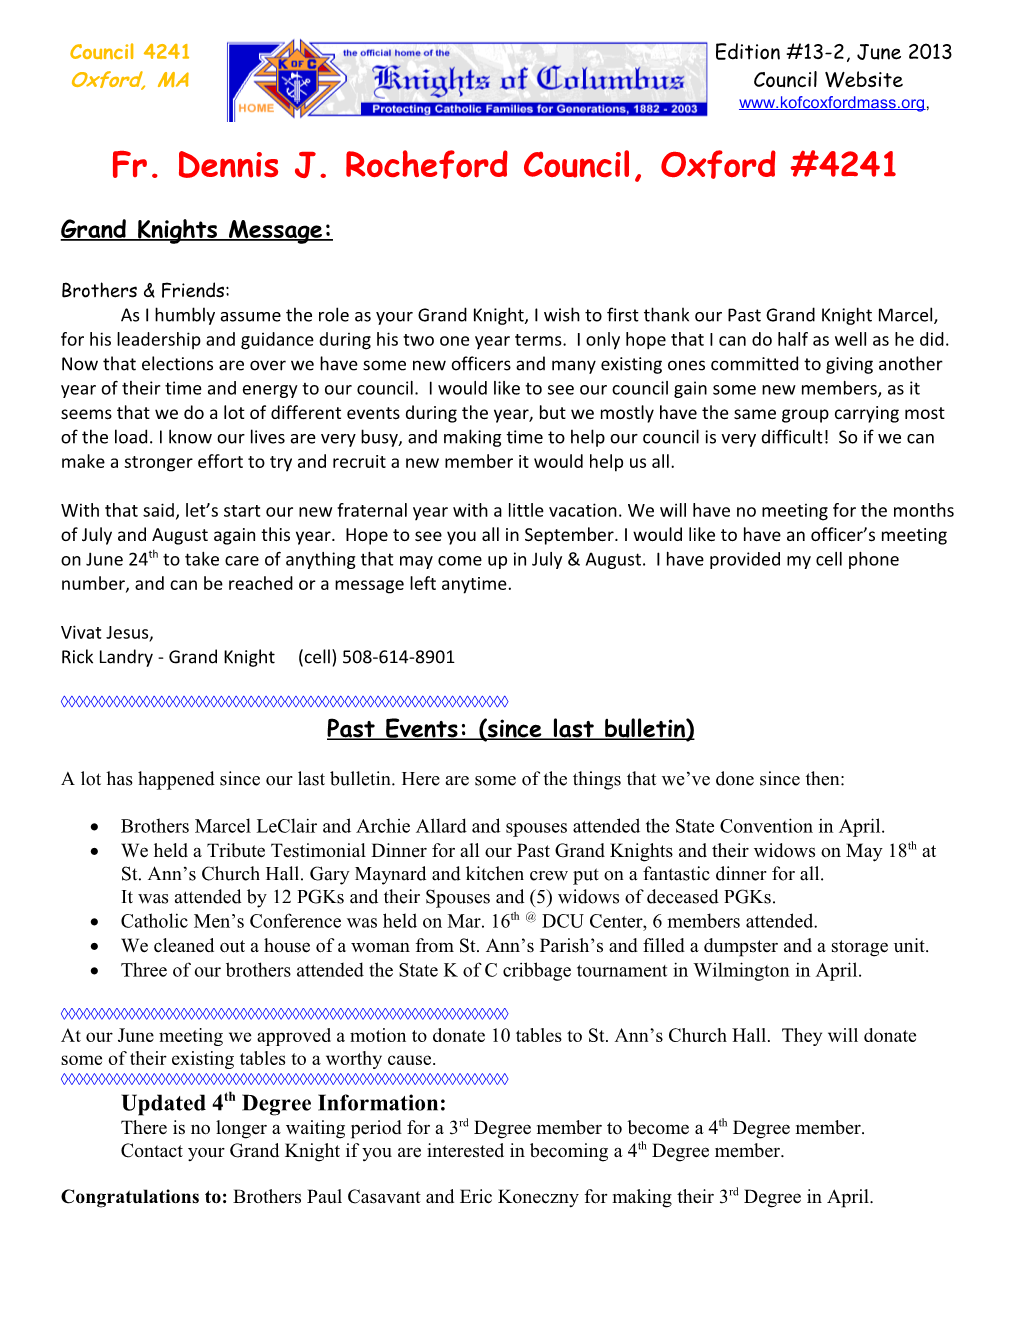 Fr. Dennis J. Rocheford Council, Oxford #4241